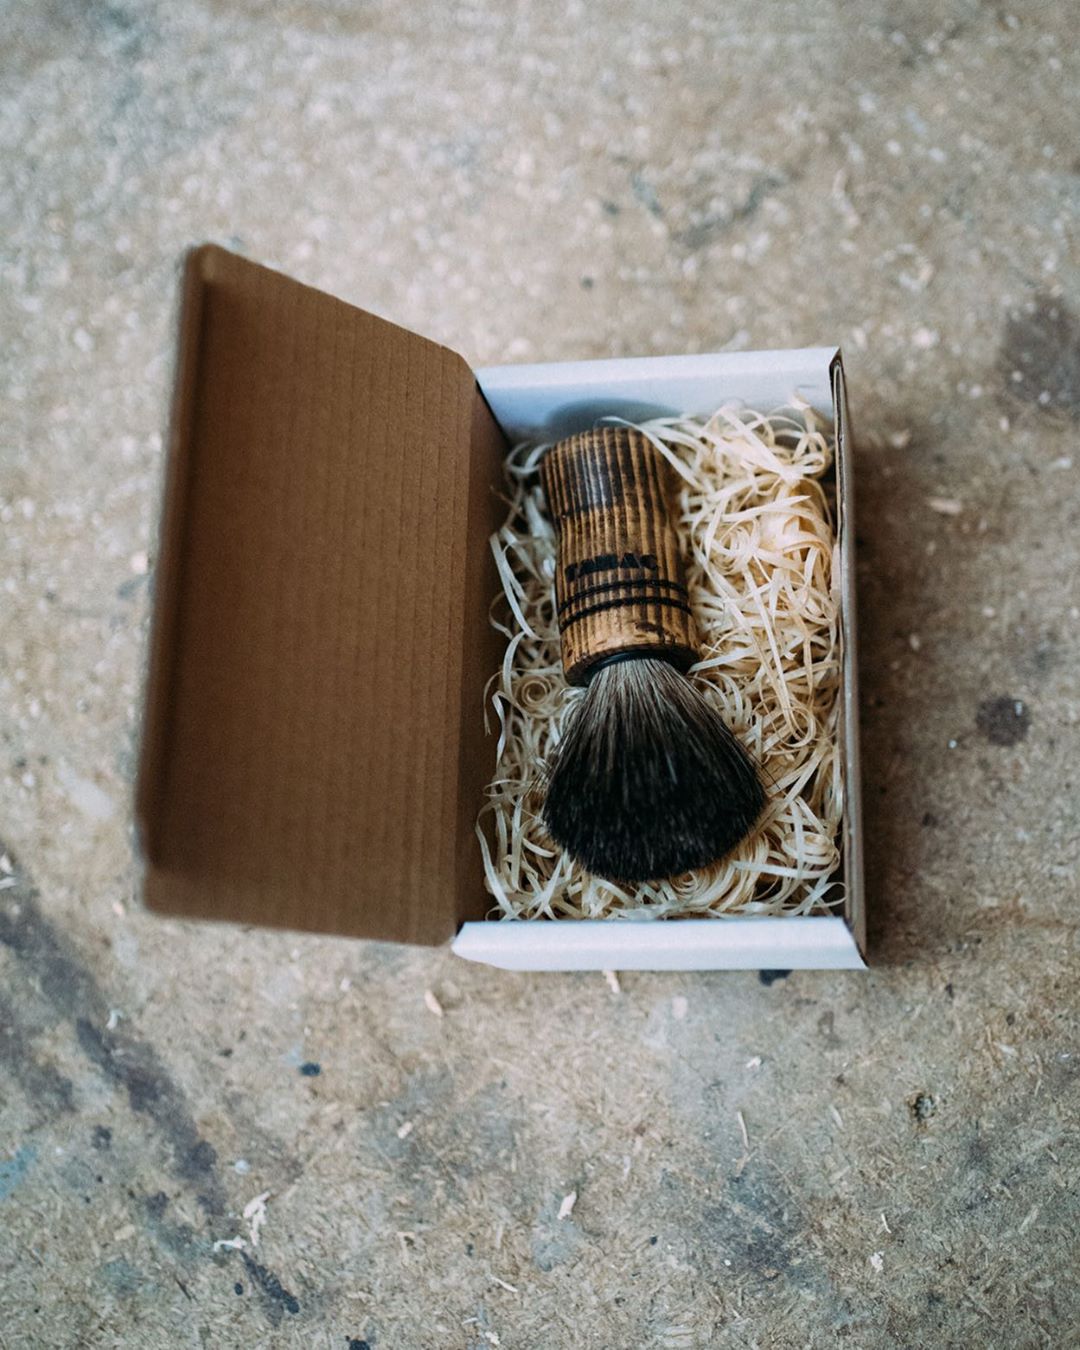 TABAC Fragrances - What a beauty - einer von den drei handgefertigten Pinseln, die ihr bald gewinnen könnt 💯
————————
.
.
.
.
.
#tabac #tabacoriginal #alteledereikoeln #wood #craftsman #craftsmanship...